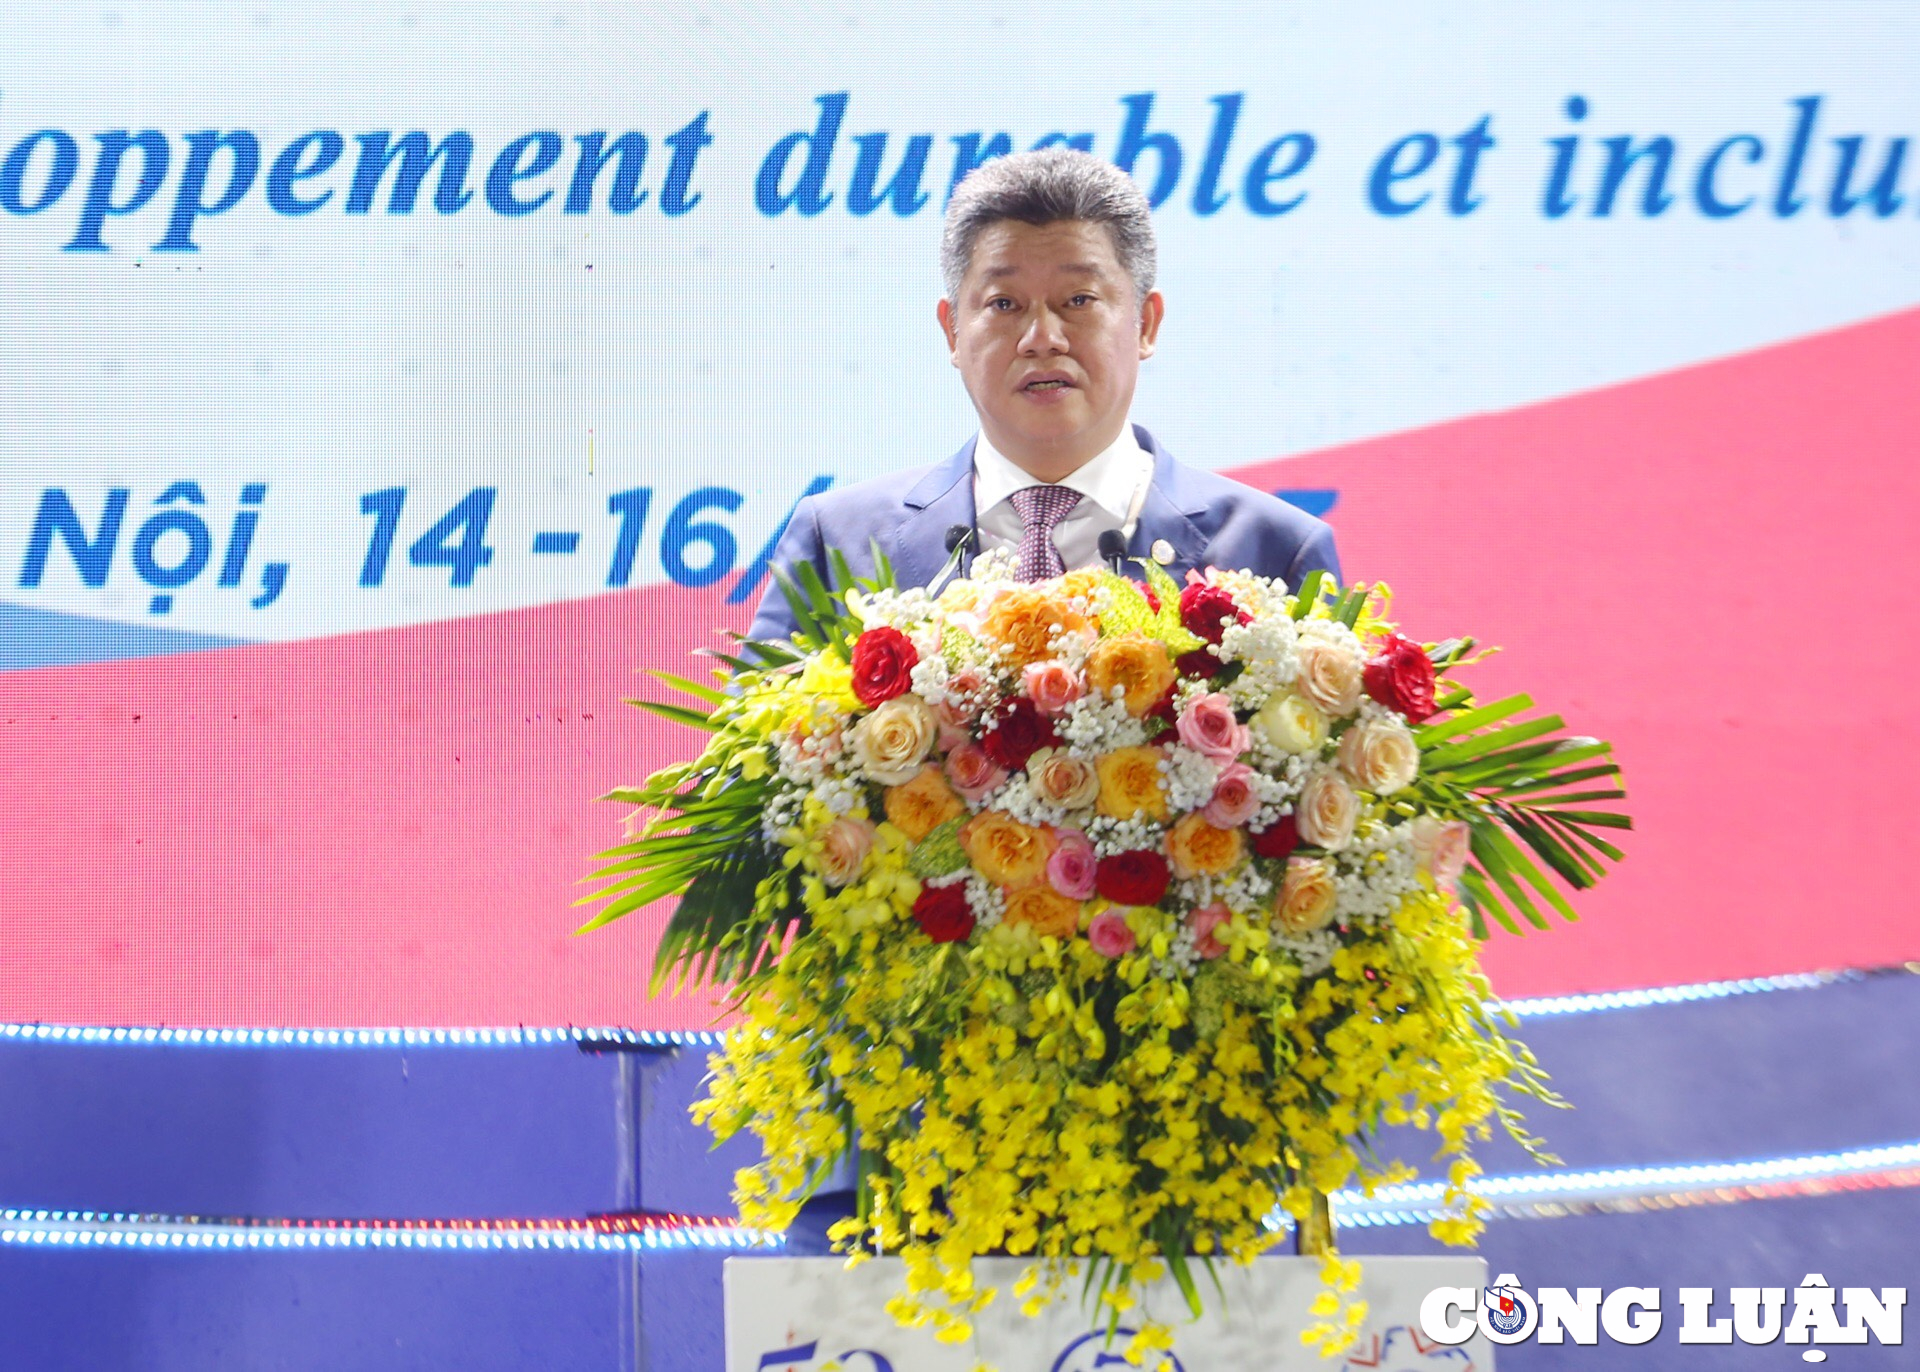 Đồng chí Nguyễn Mạnh Quyền, Phó Chủ tịch UBND TP Hà Nội phát biểu khai mạc chương trình.